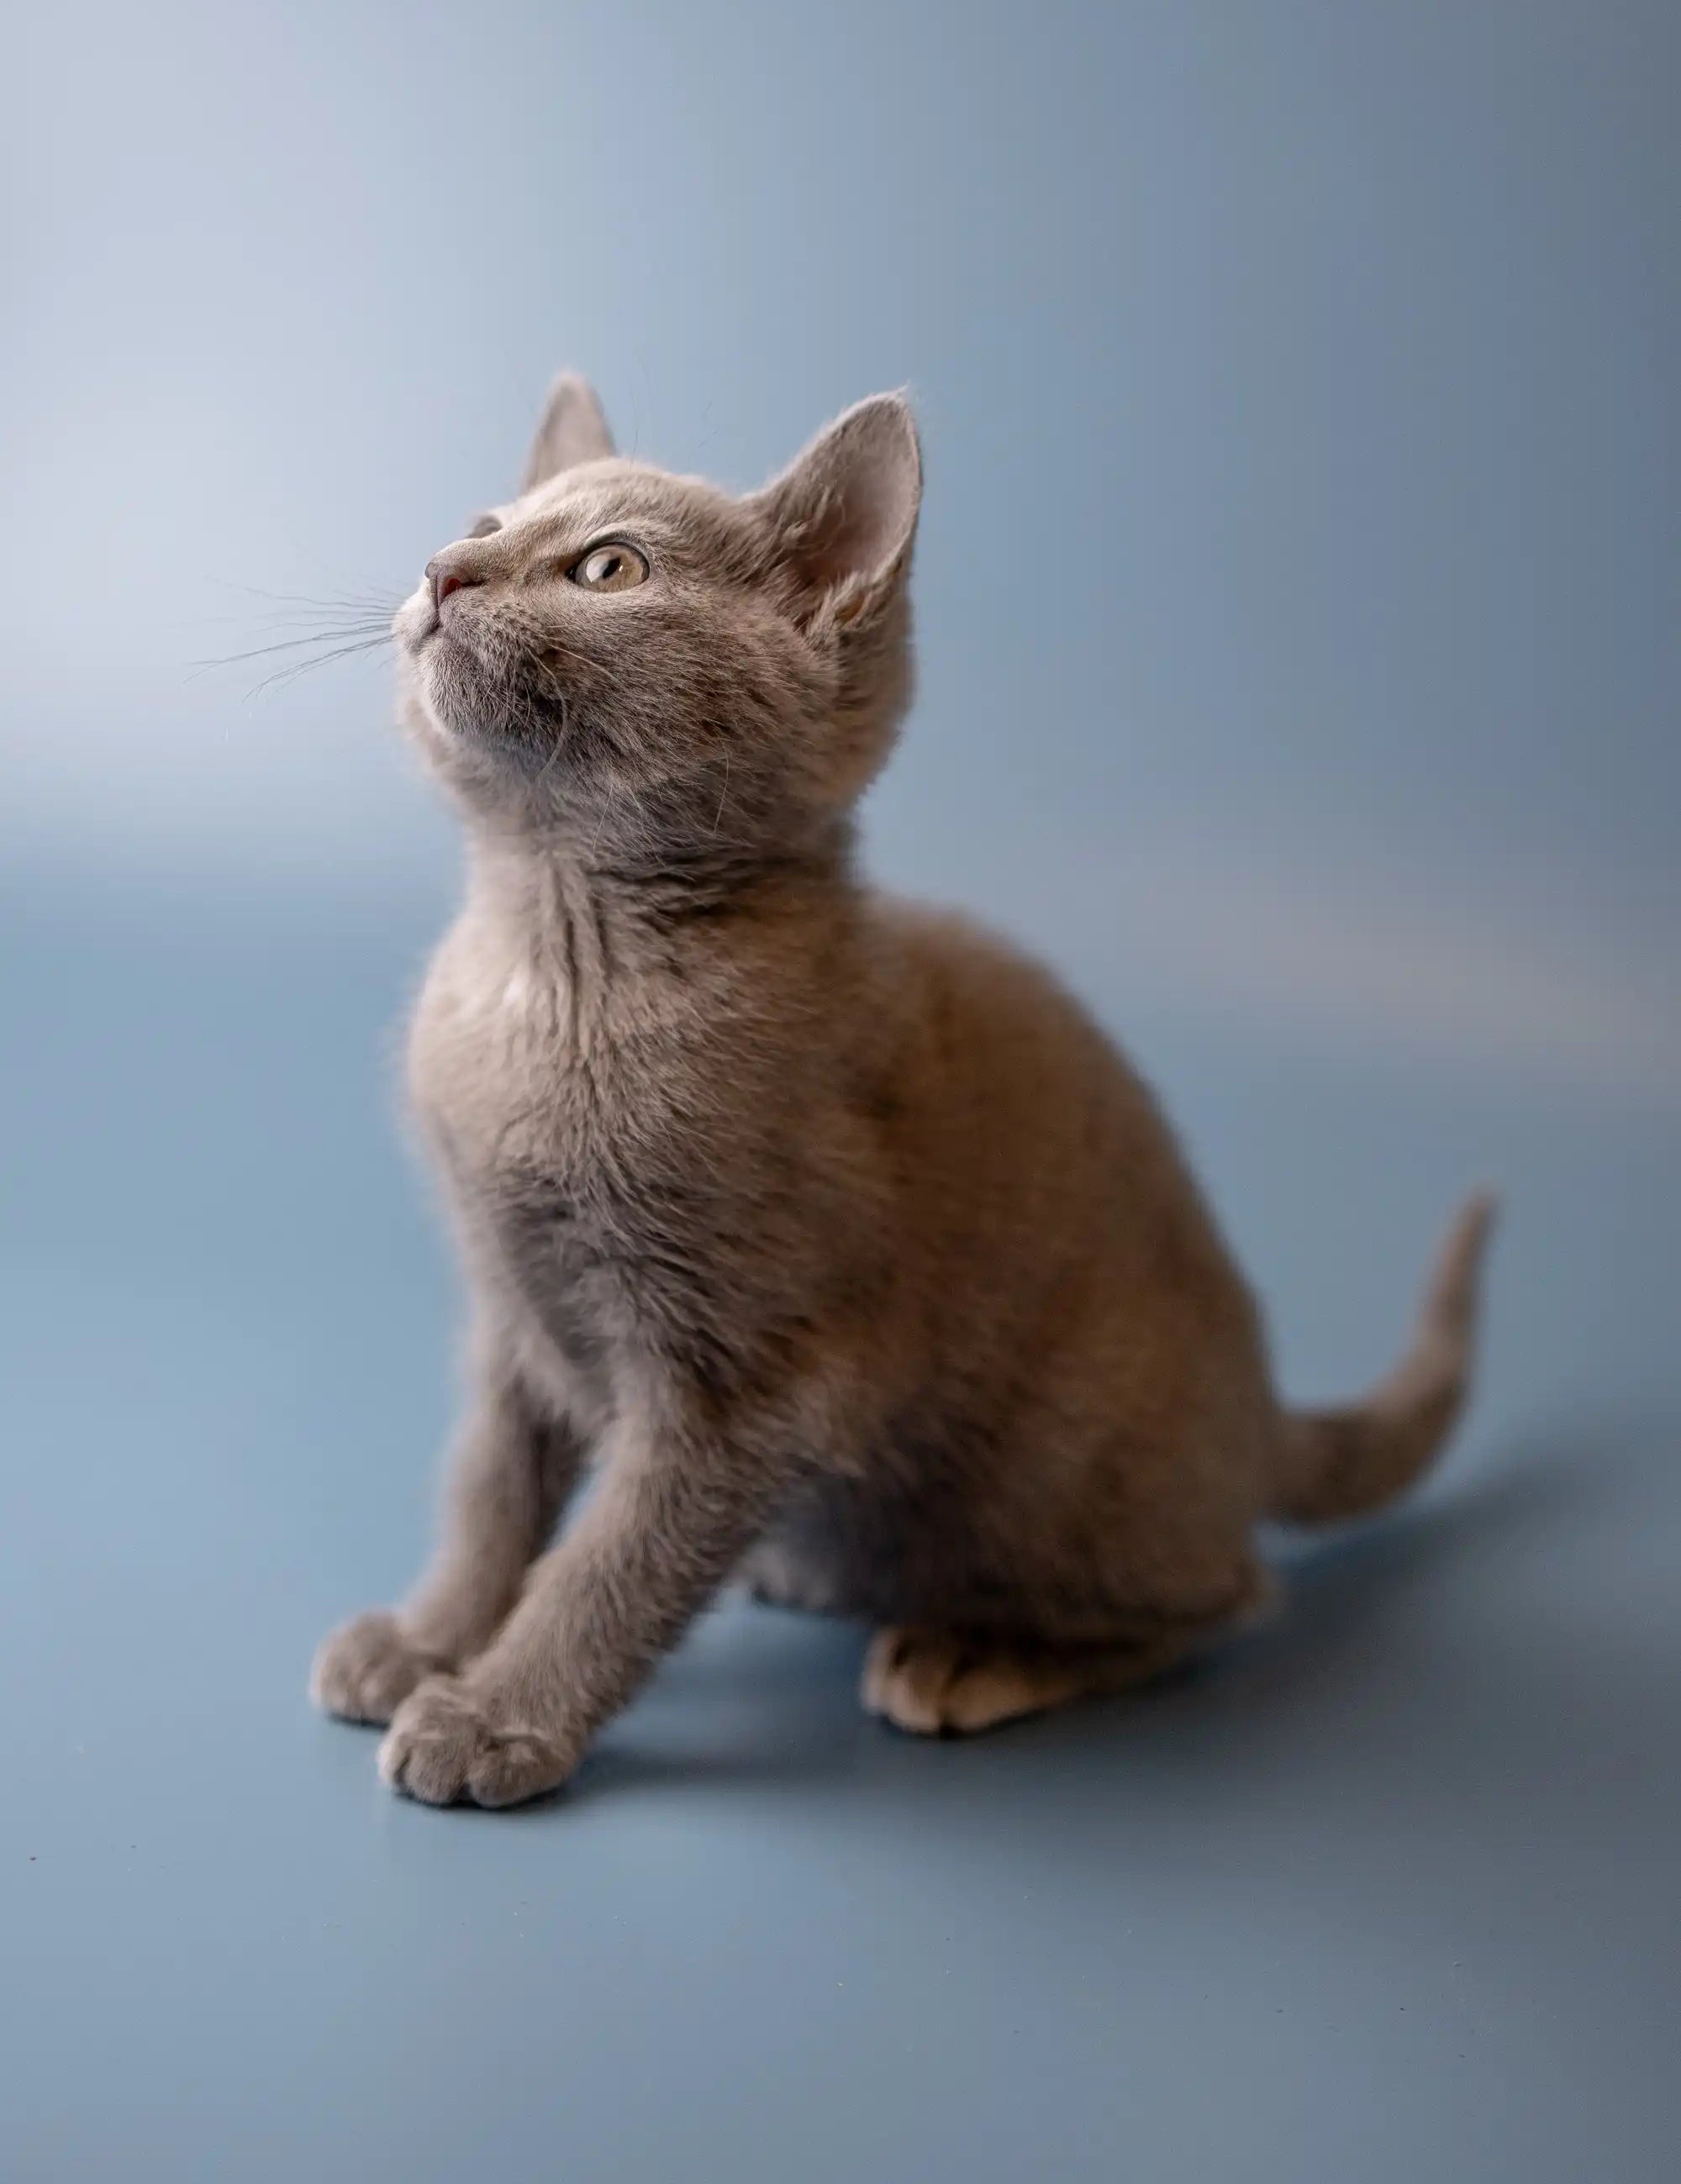 Ukranian Blue Kittens For Sale Westa | Russian Kitten